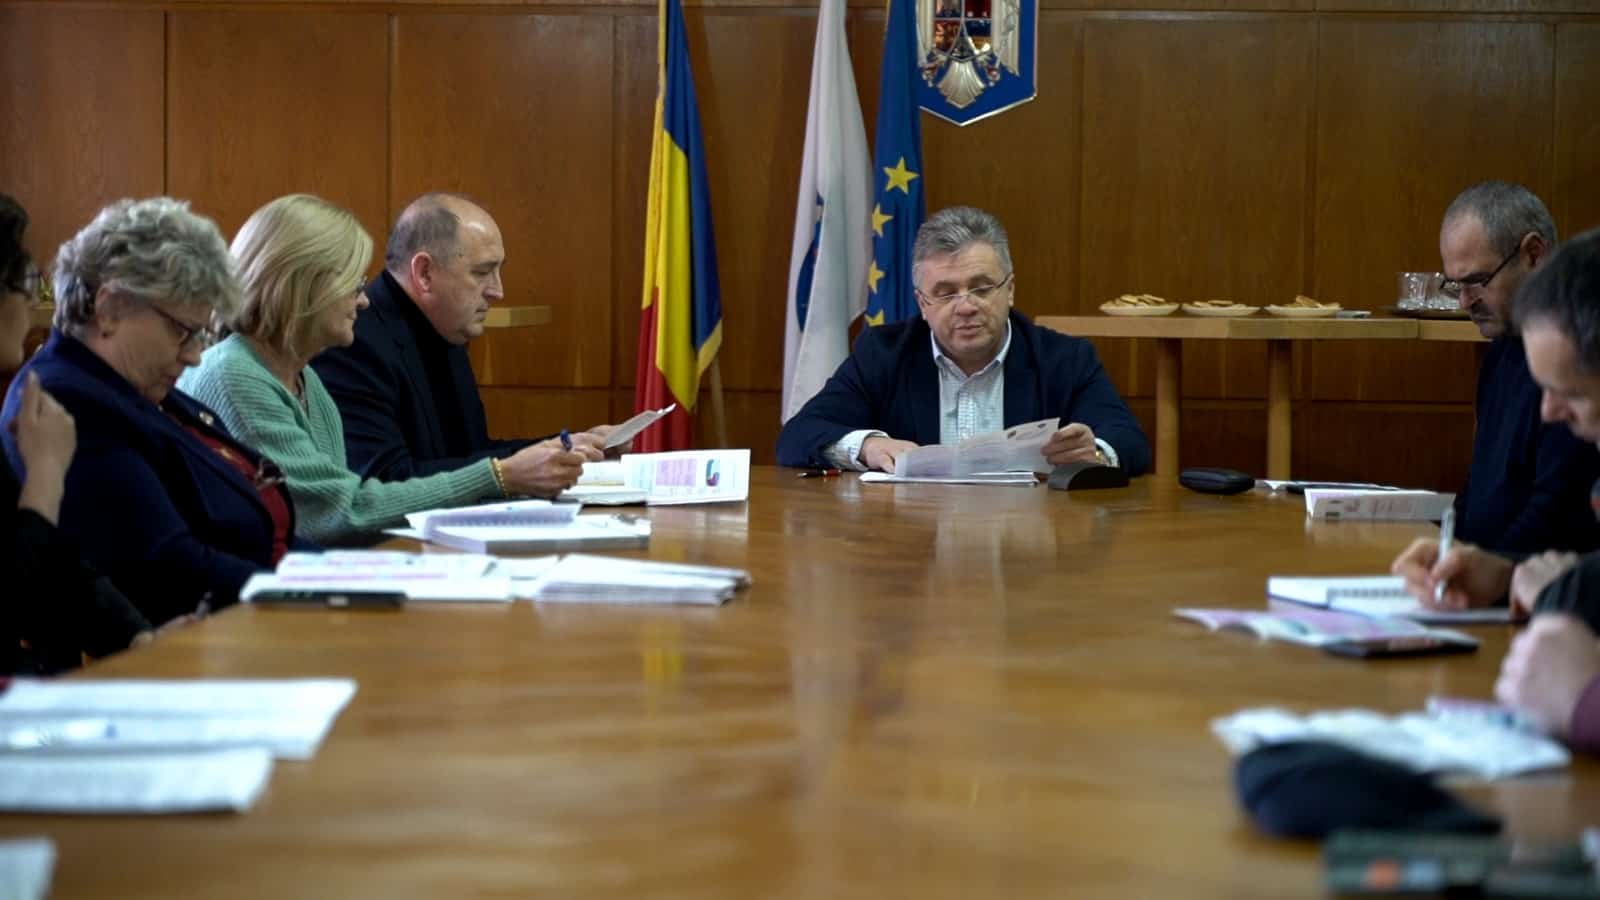 dezbatere publică a proiectului bugetului local al municipiului mediaș (video, foto)